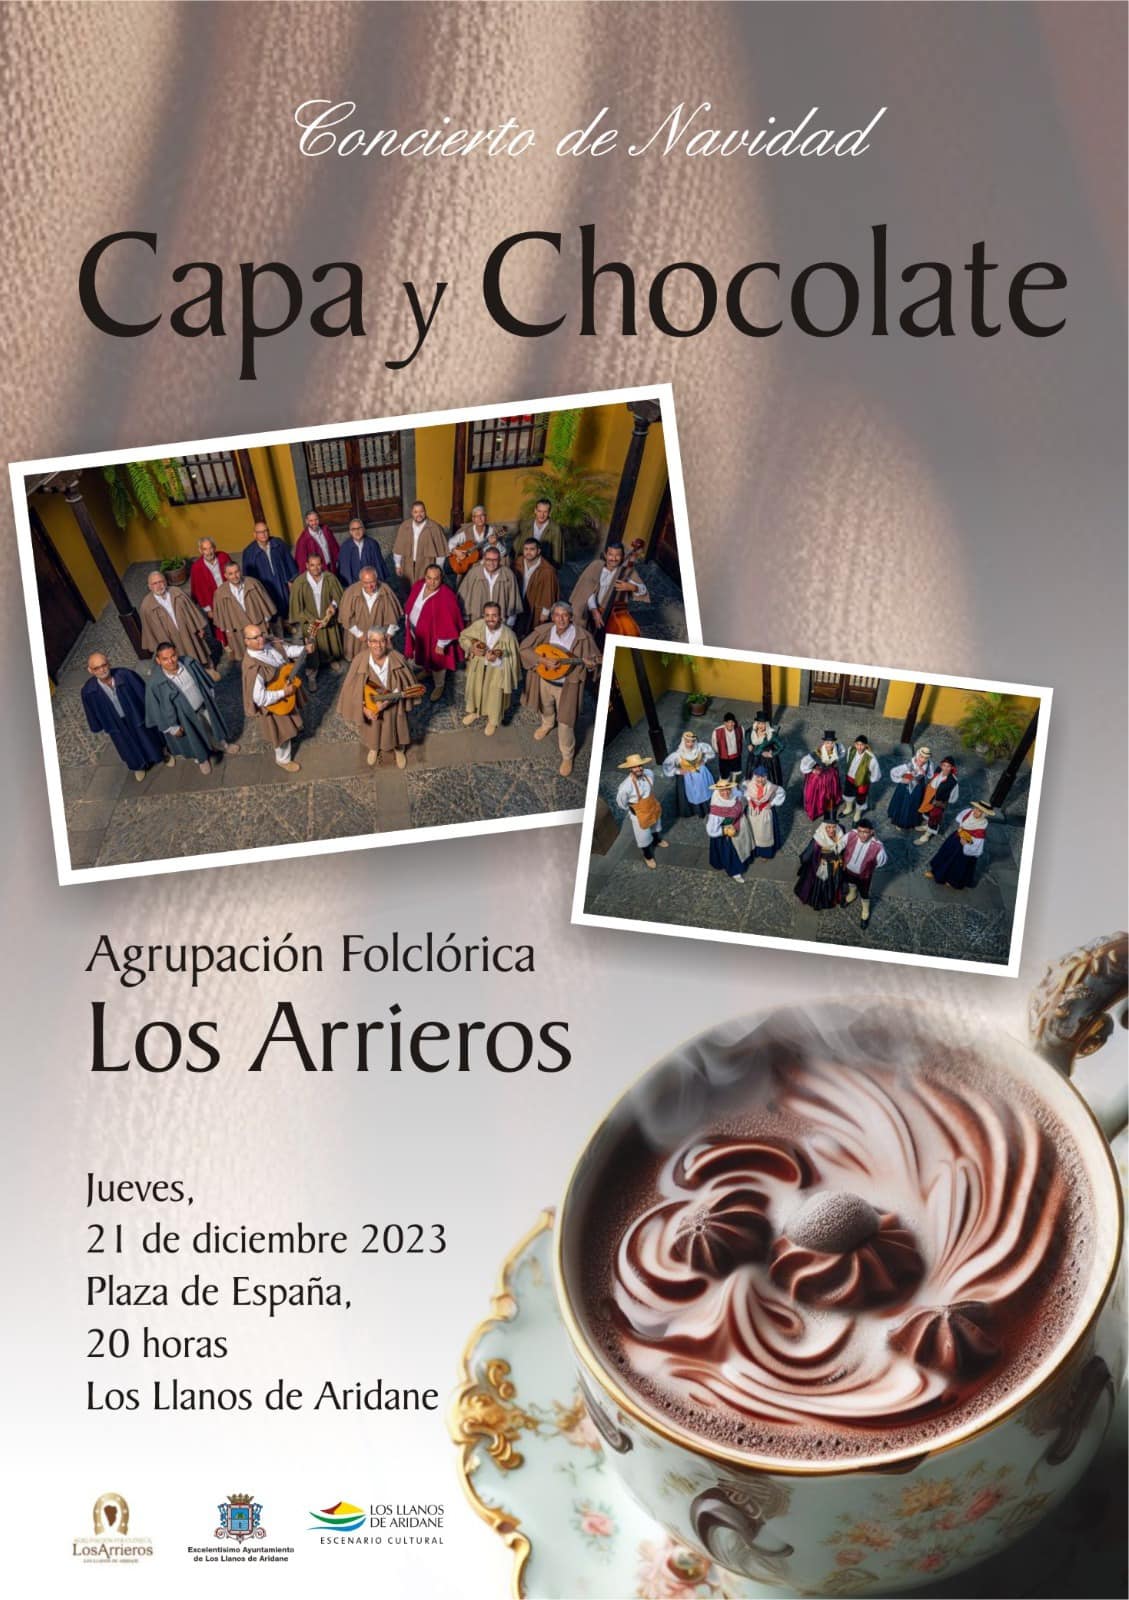 Concierto "Capa y chocolate", con Los Arrieros